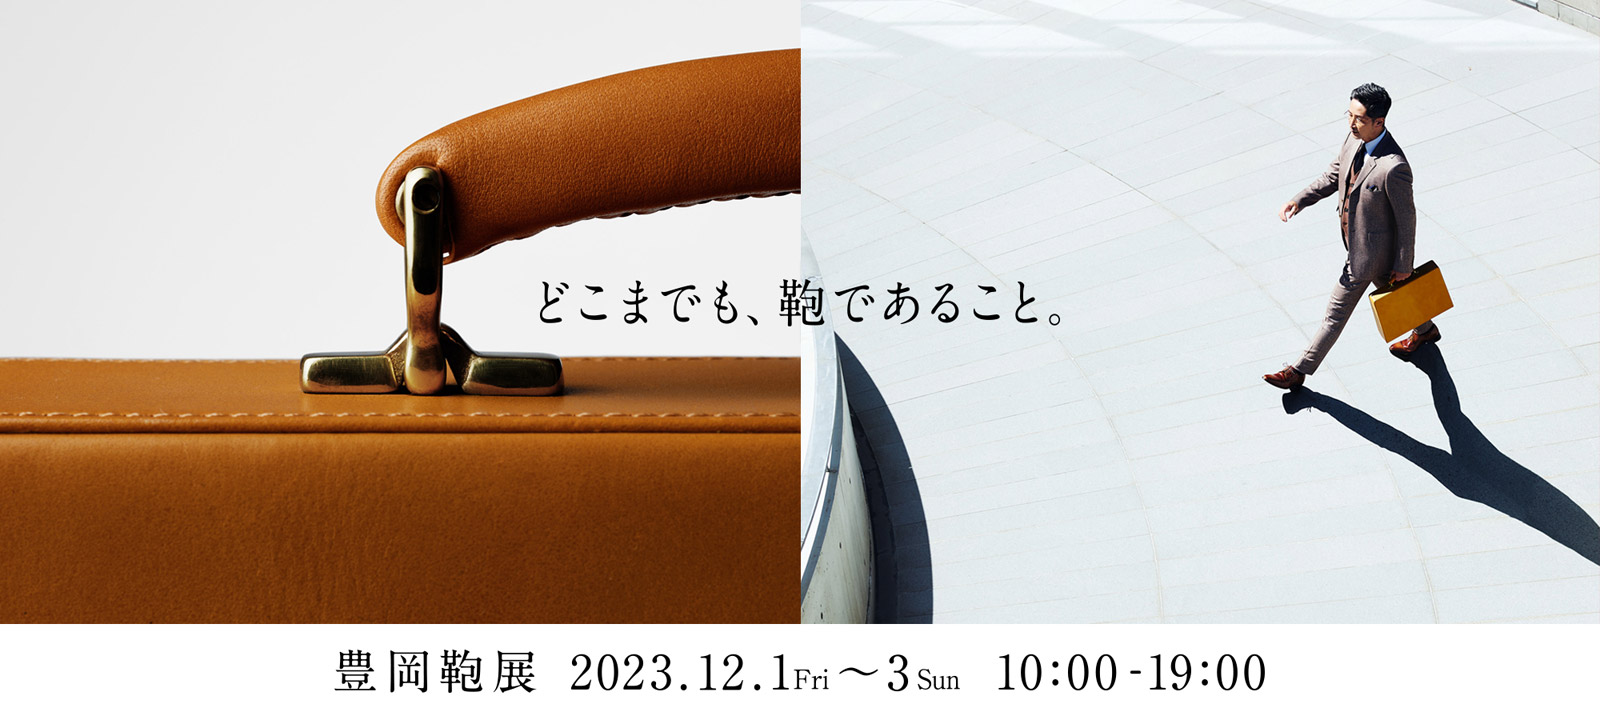 どこまでも、鞄であること 豊岡鞄展 2023.12.1(Fri)〜3(Sun) 10:00 - 19:00